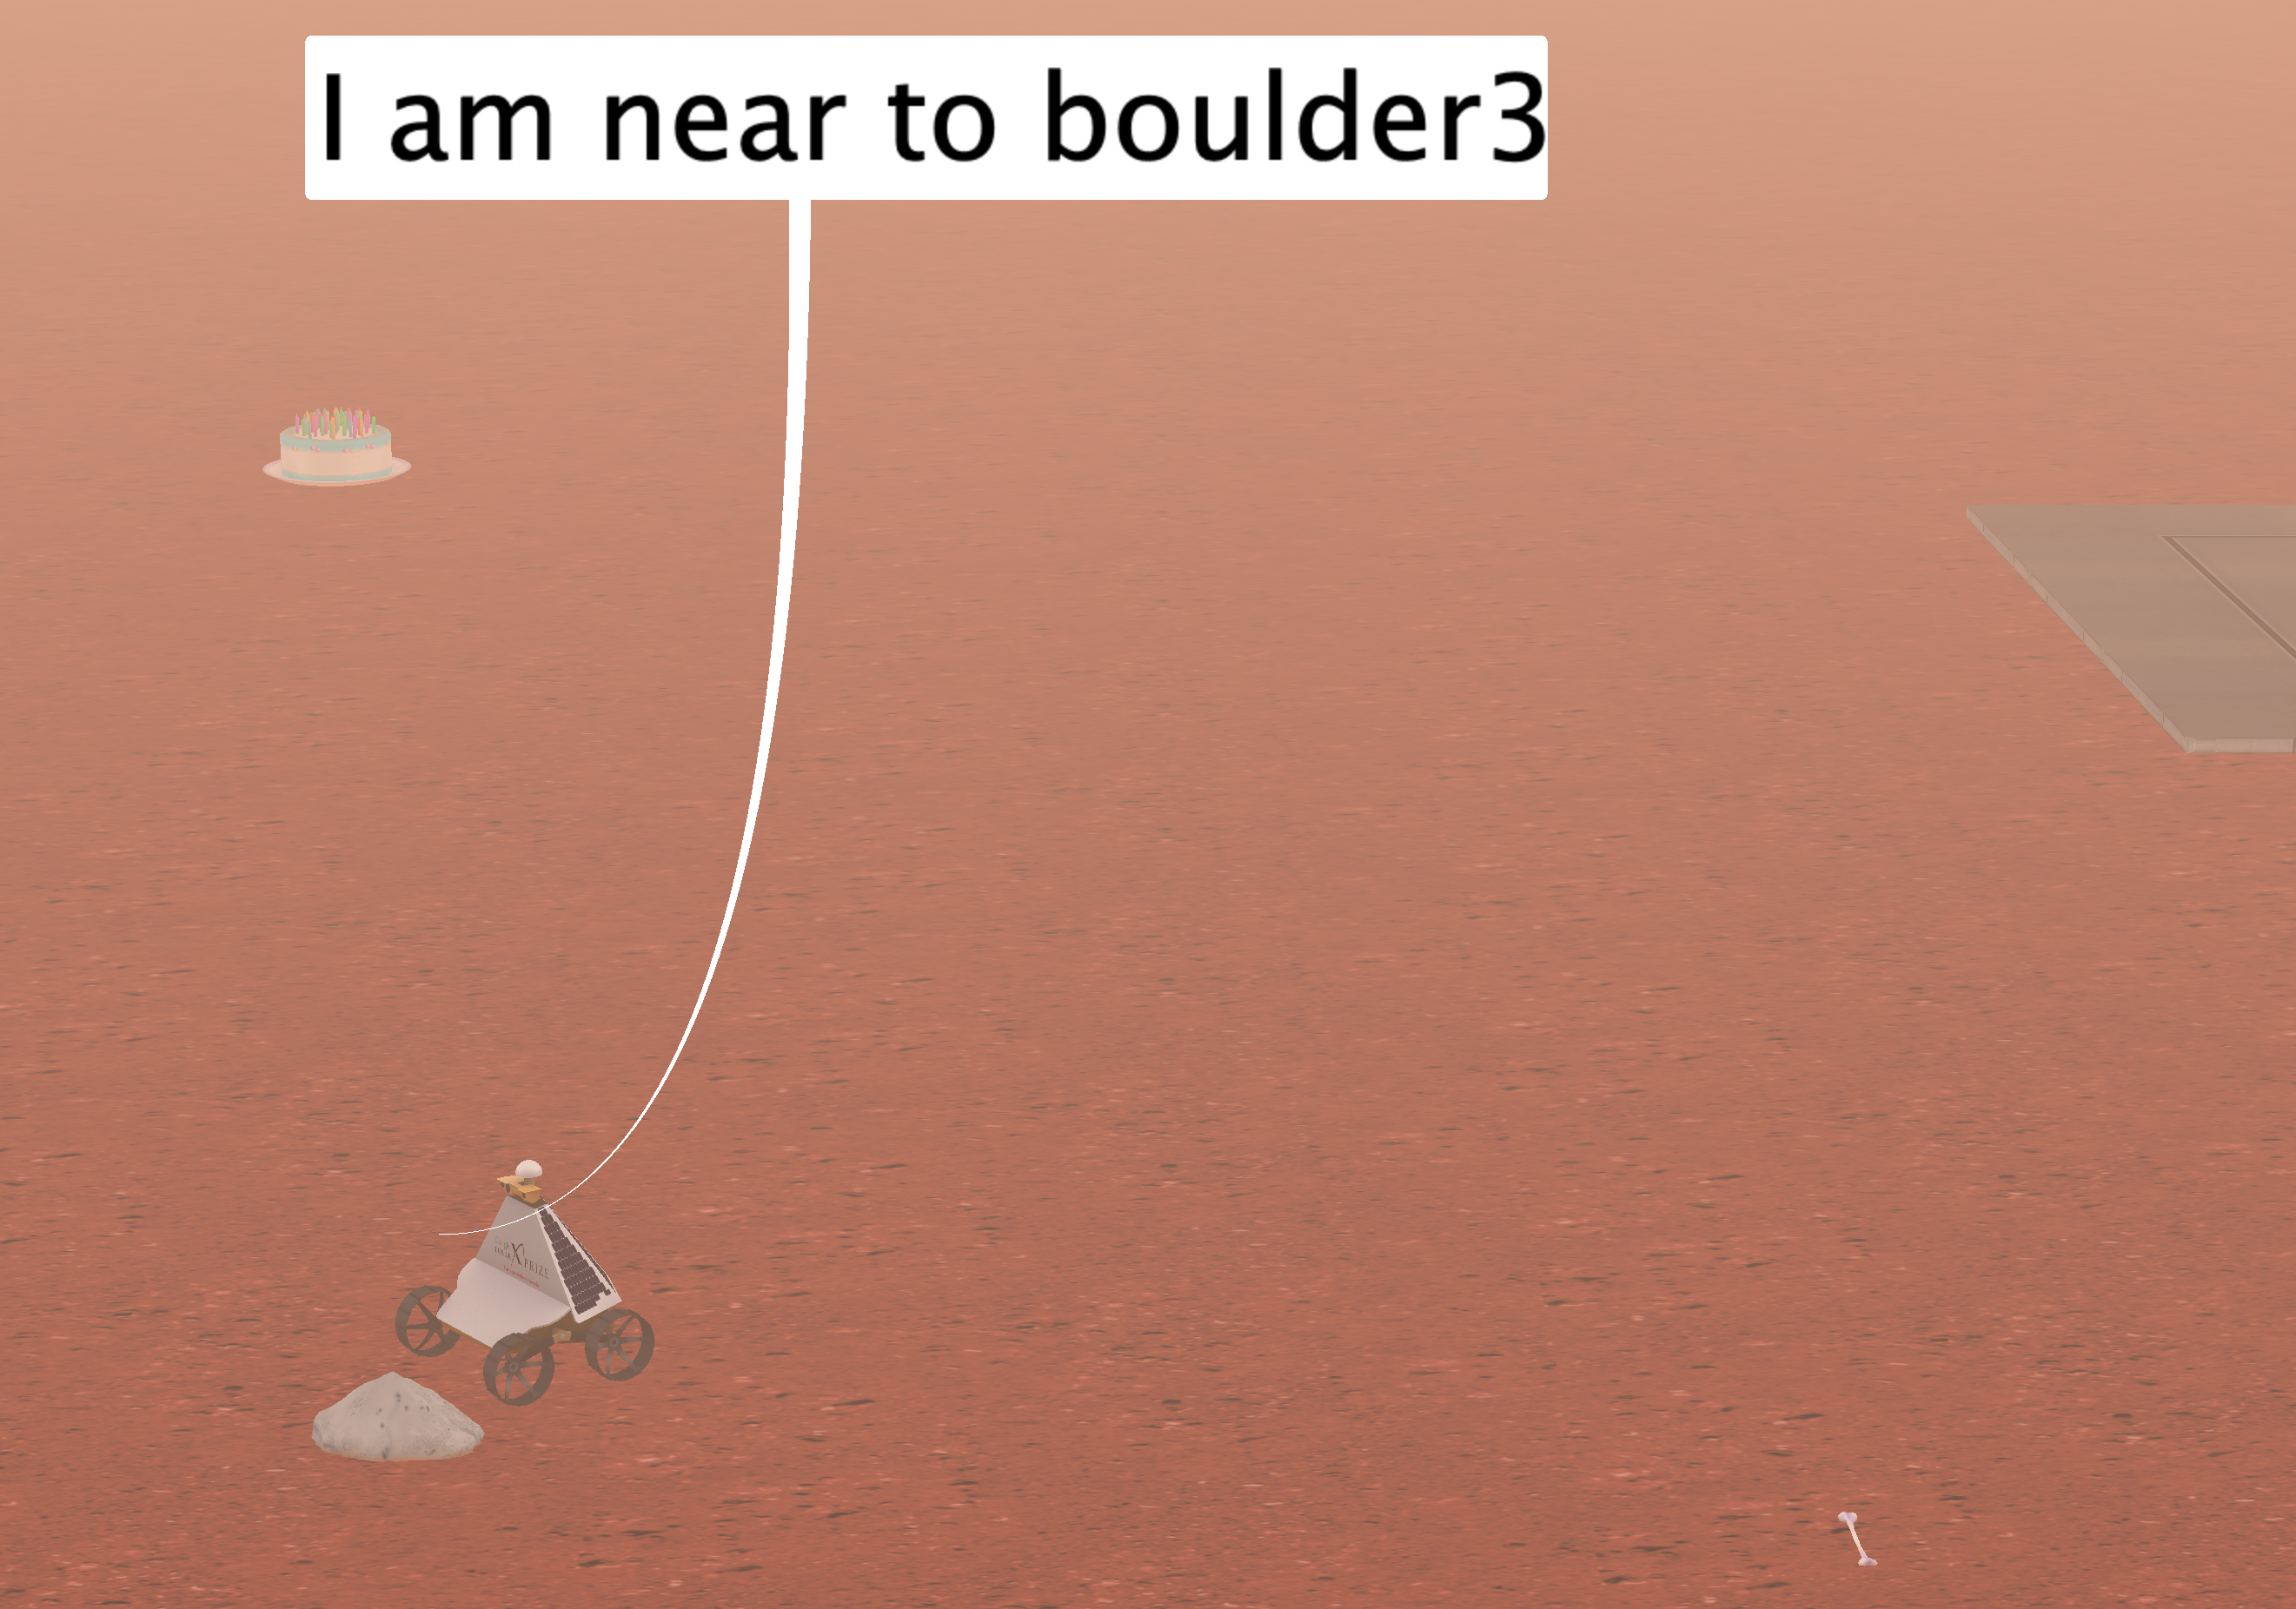 Rover near boulder3